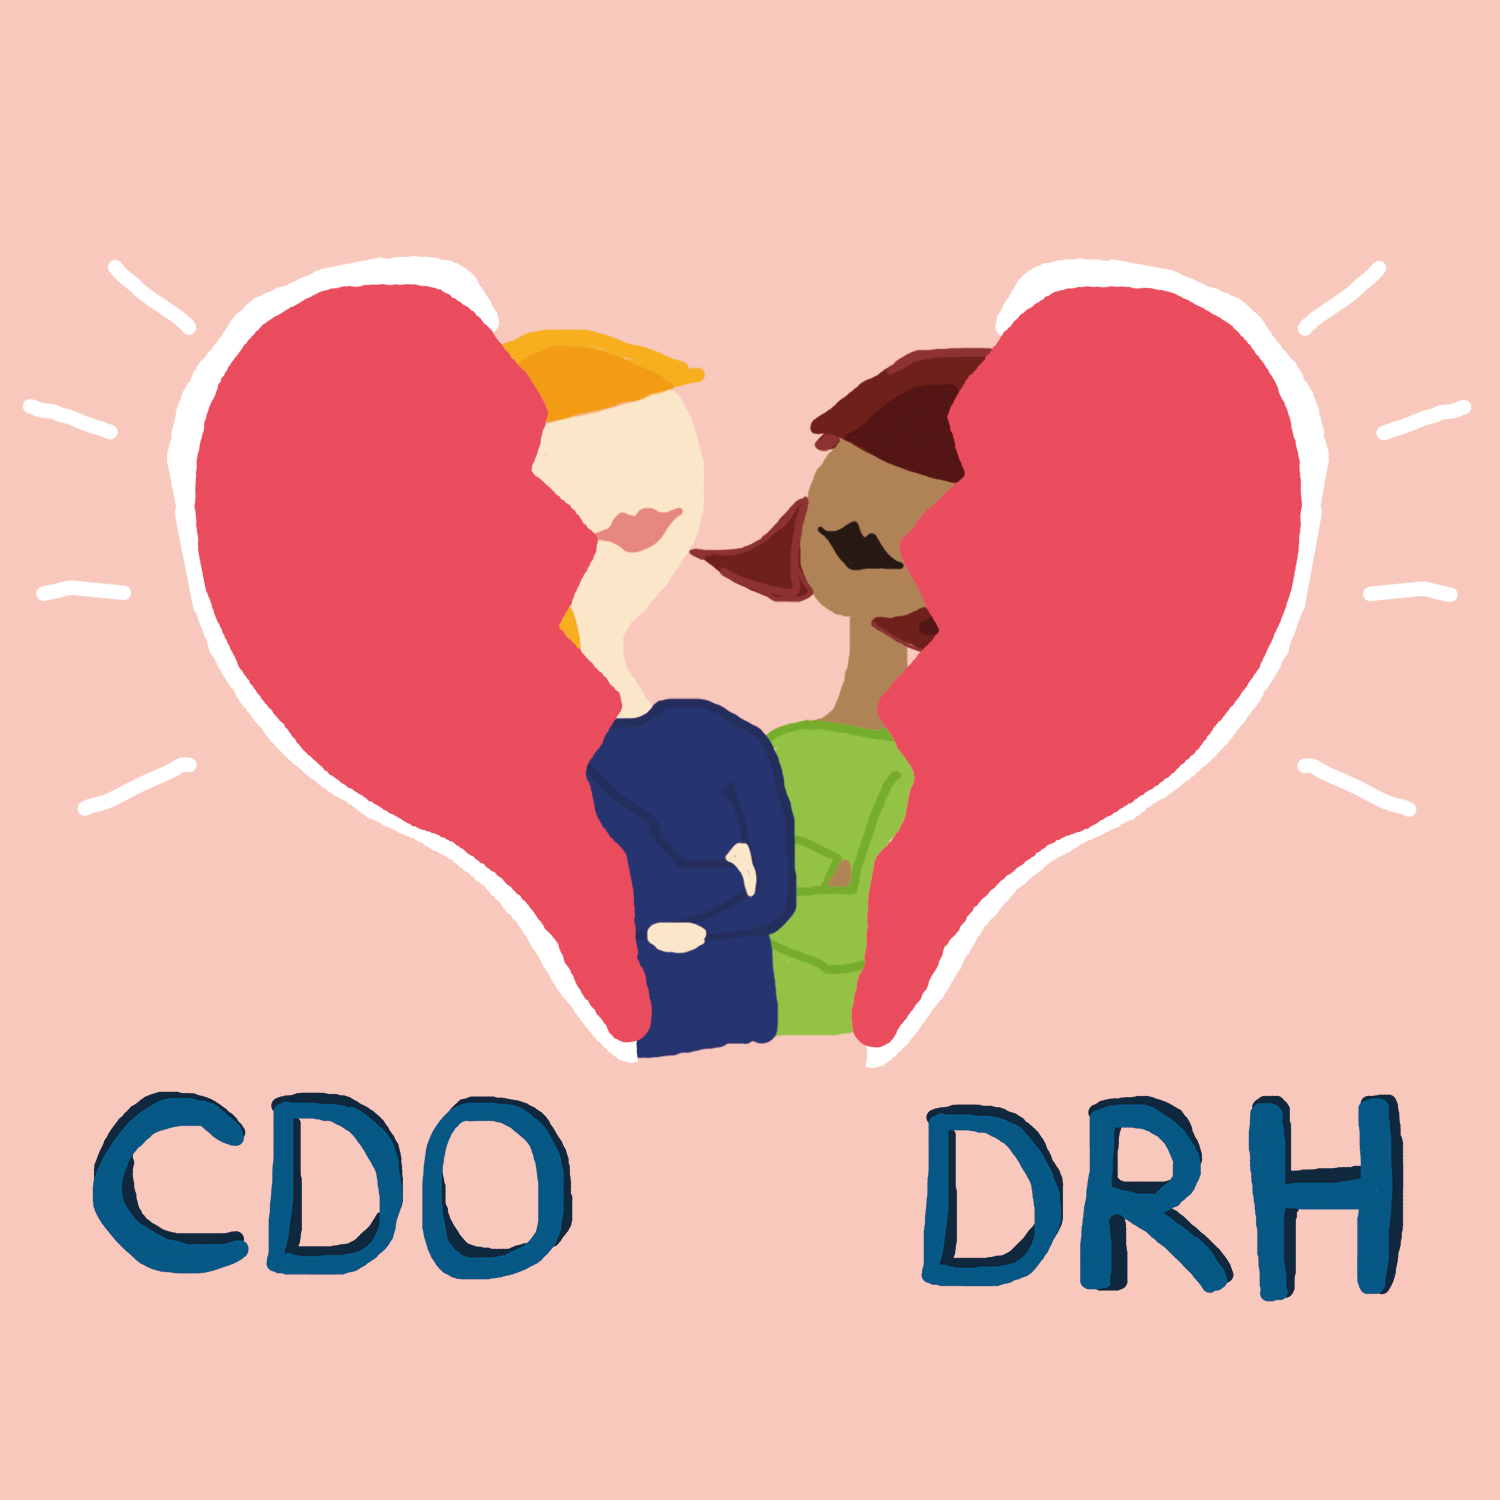 CDO - DRH : je t